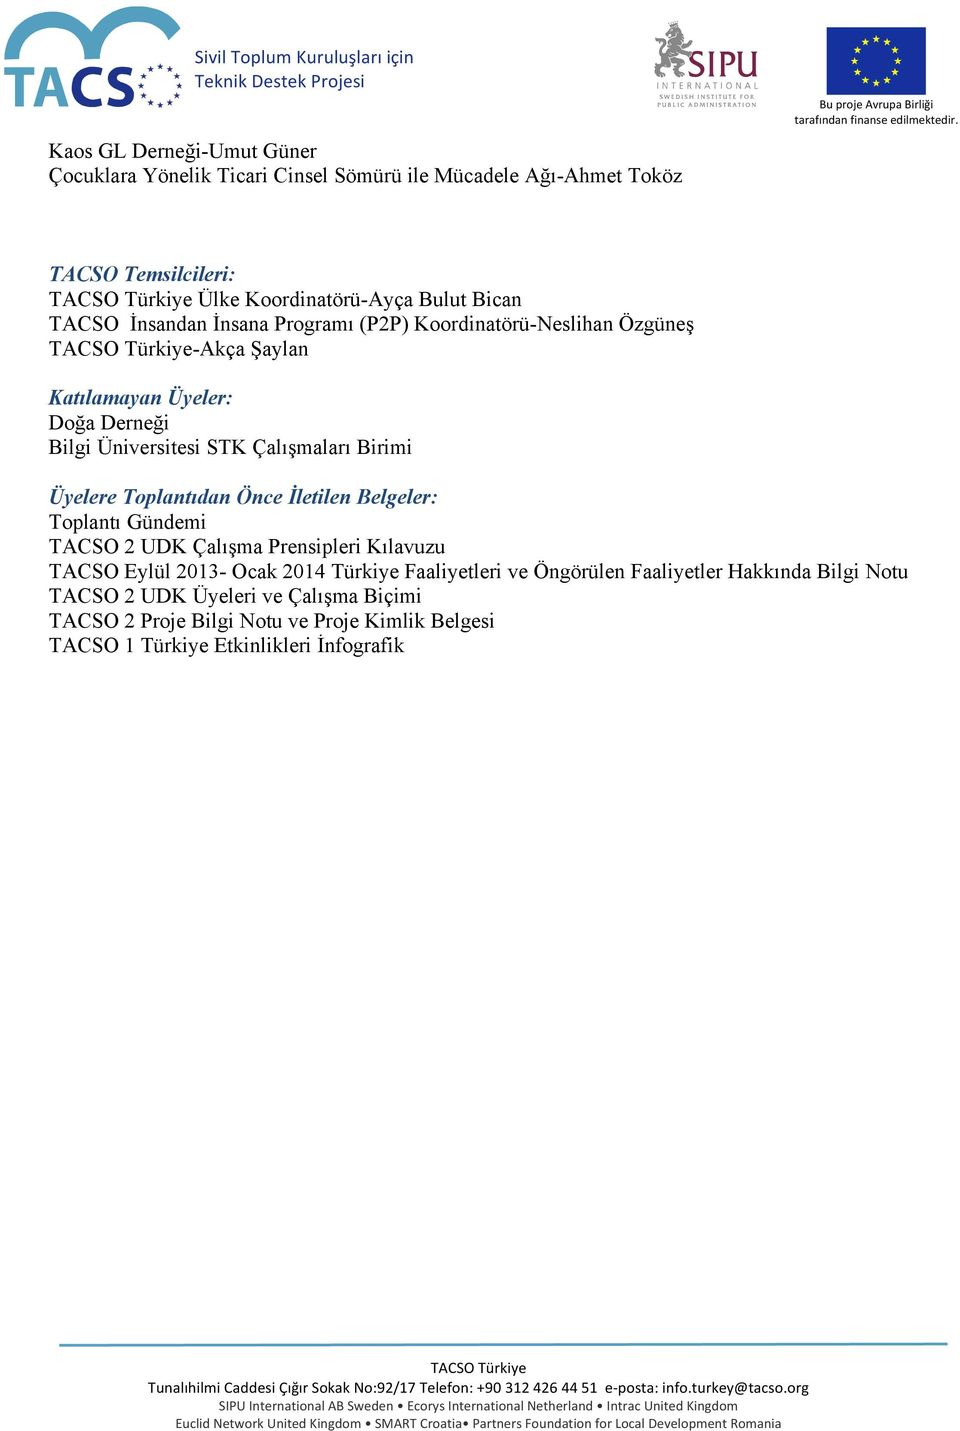 Birimi Üyelere Toplantıdan Önce İletilen Belgeler: Toplantı Gündemi TACSO 2 UDK Çalışma Prensipleri Kılavuzu TACSO Eylül 2013- Ocak 2014 Türkiye Faaliyetleri ve